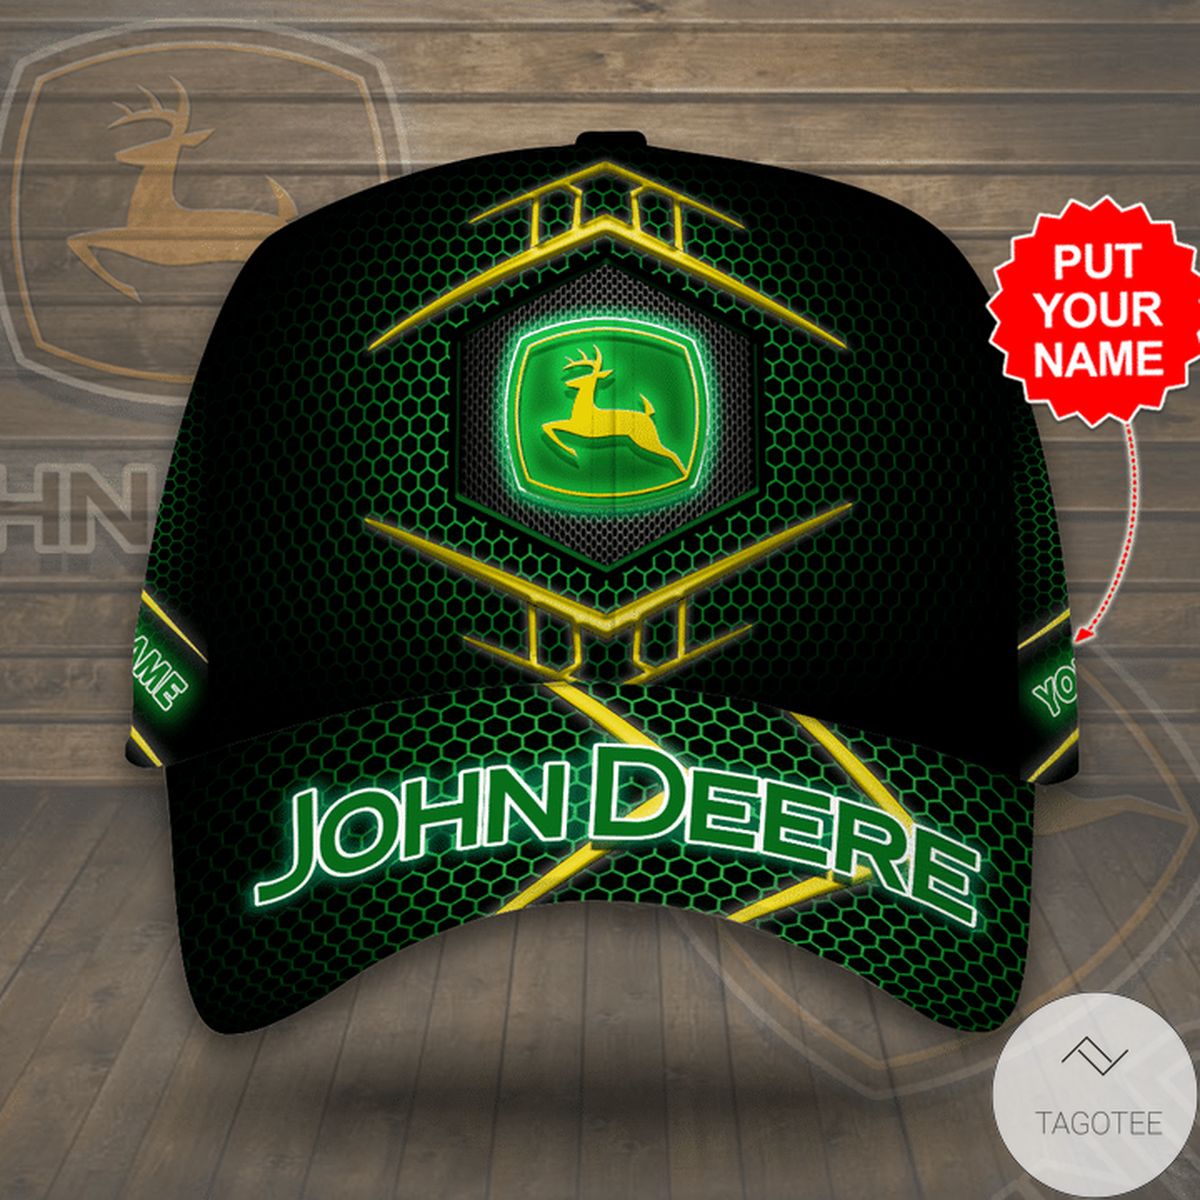 Personalized John Deere Cap